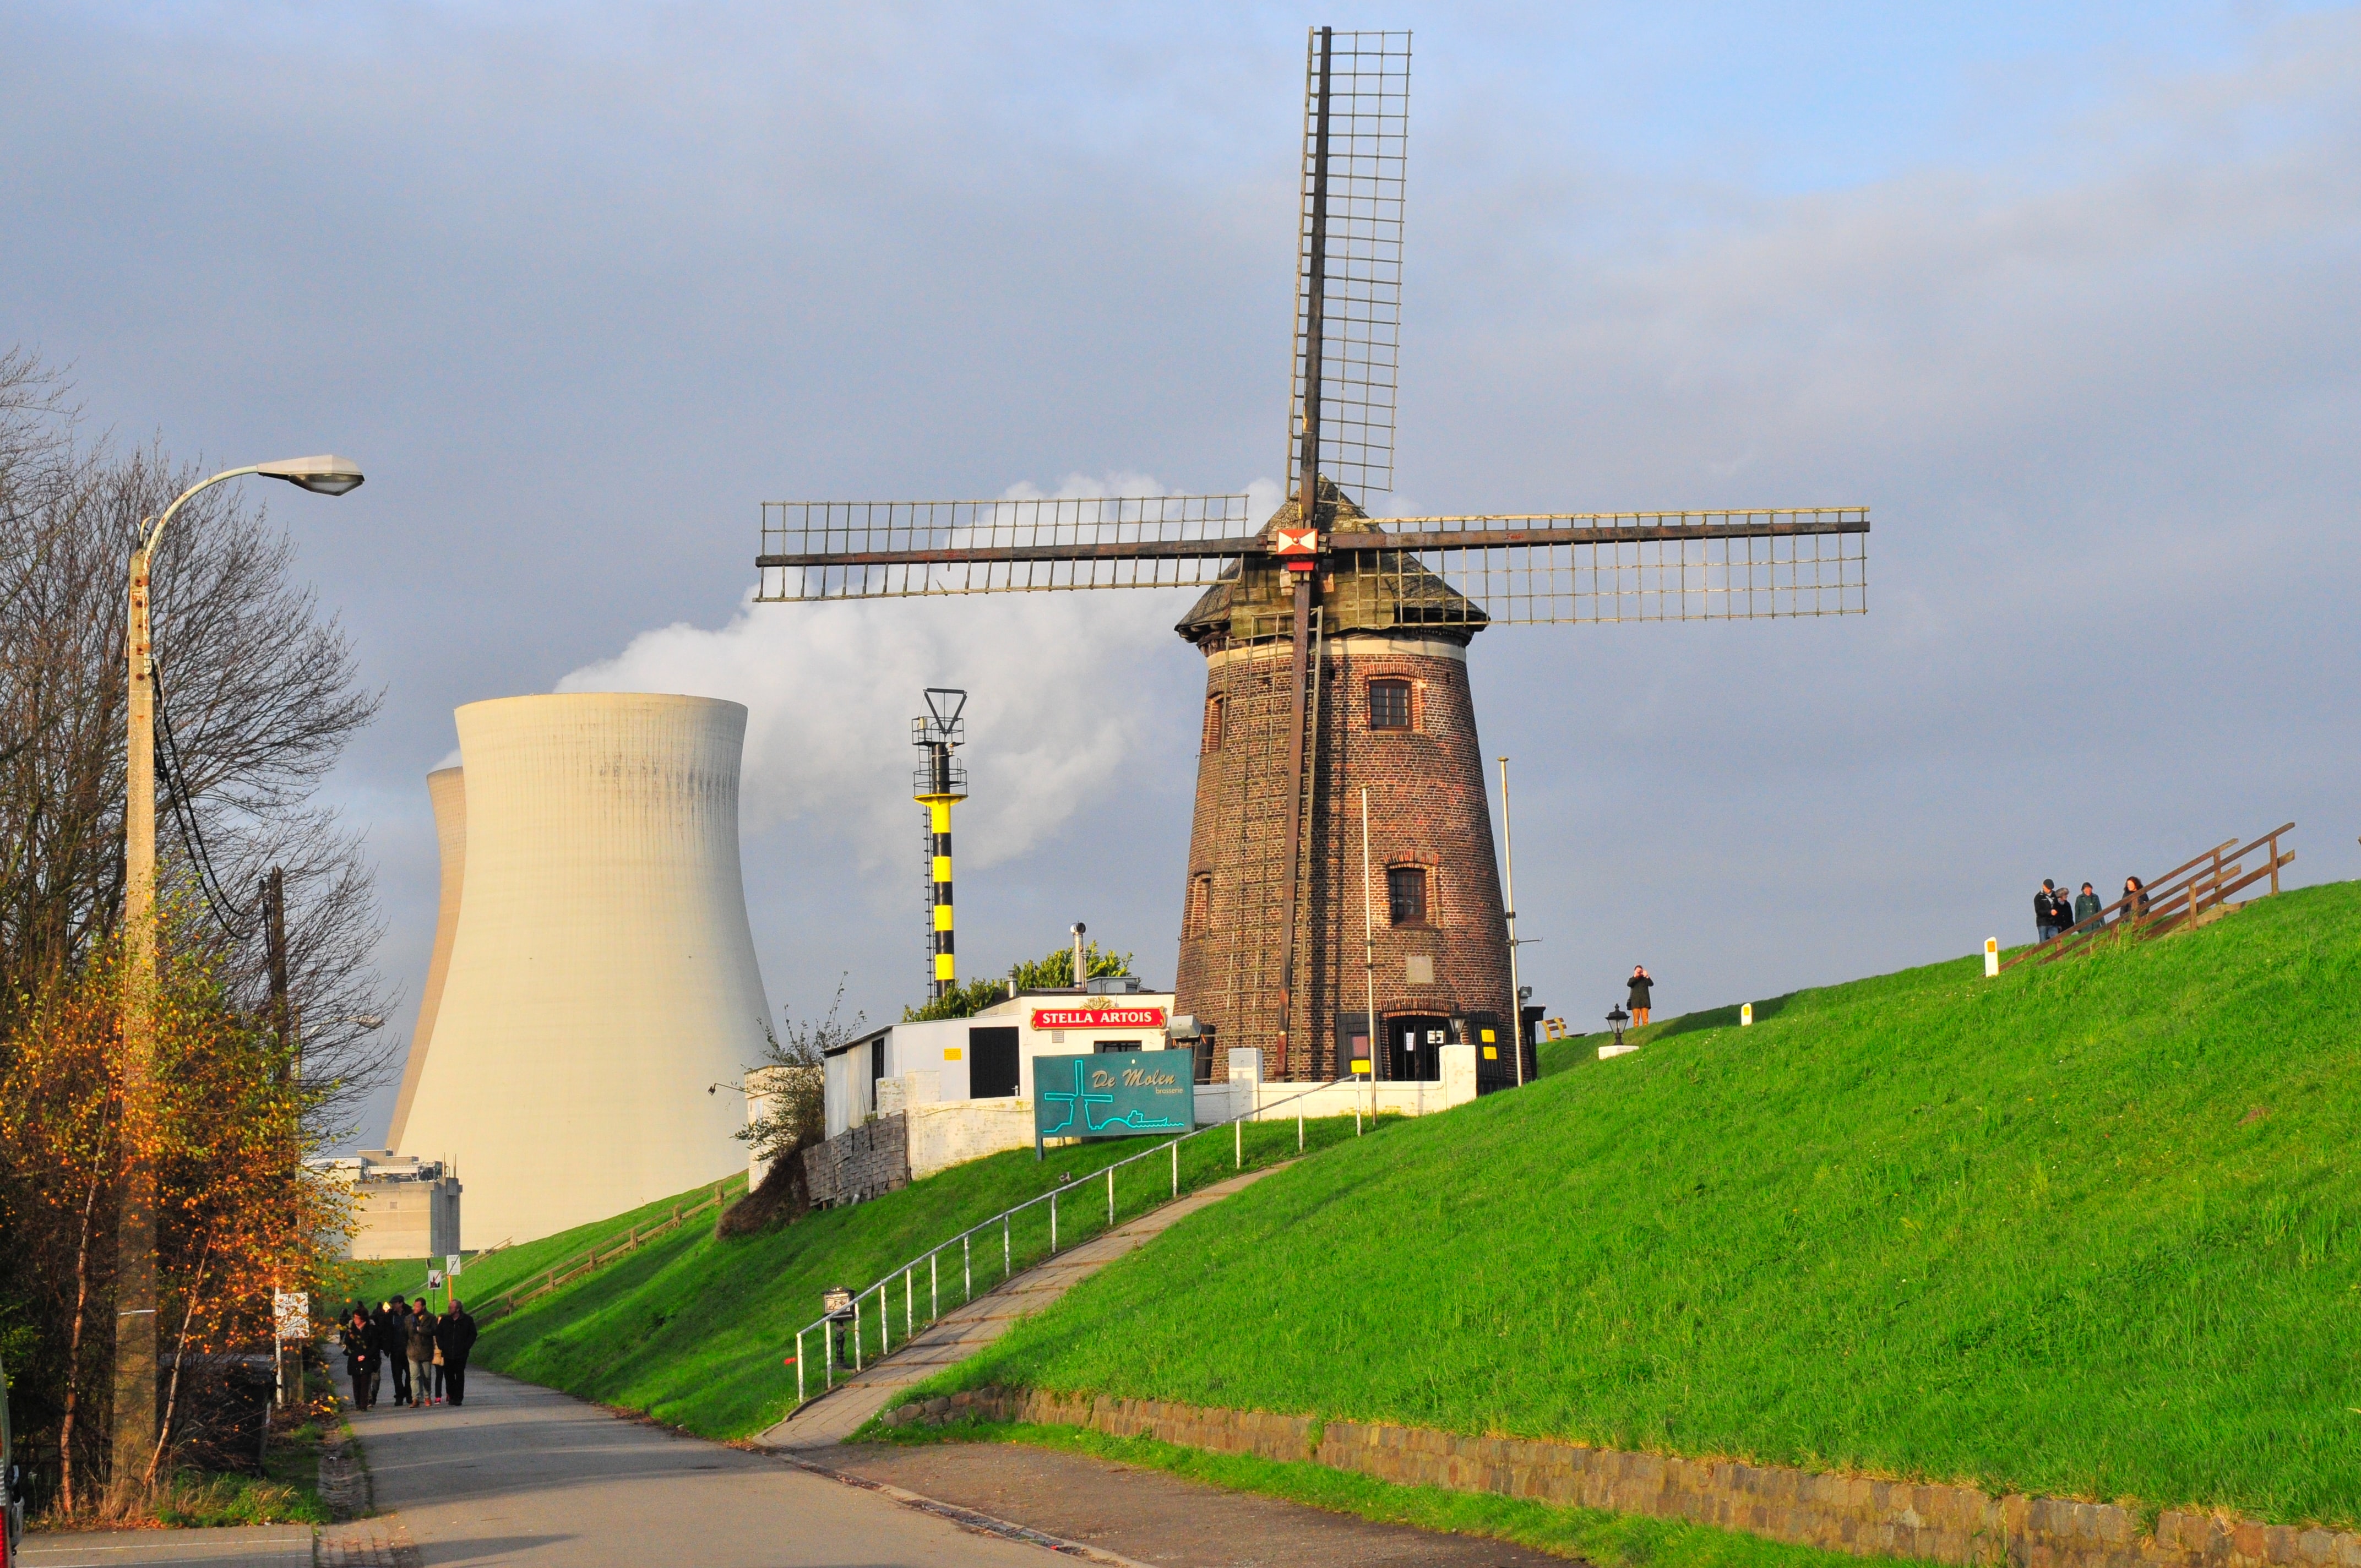 Kerncentrale in Doel, (C) Boudewijn Huysmans, via Unsplash